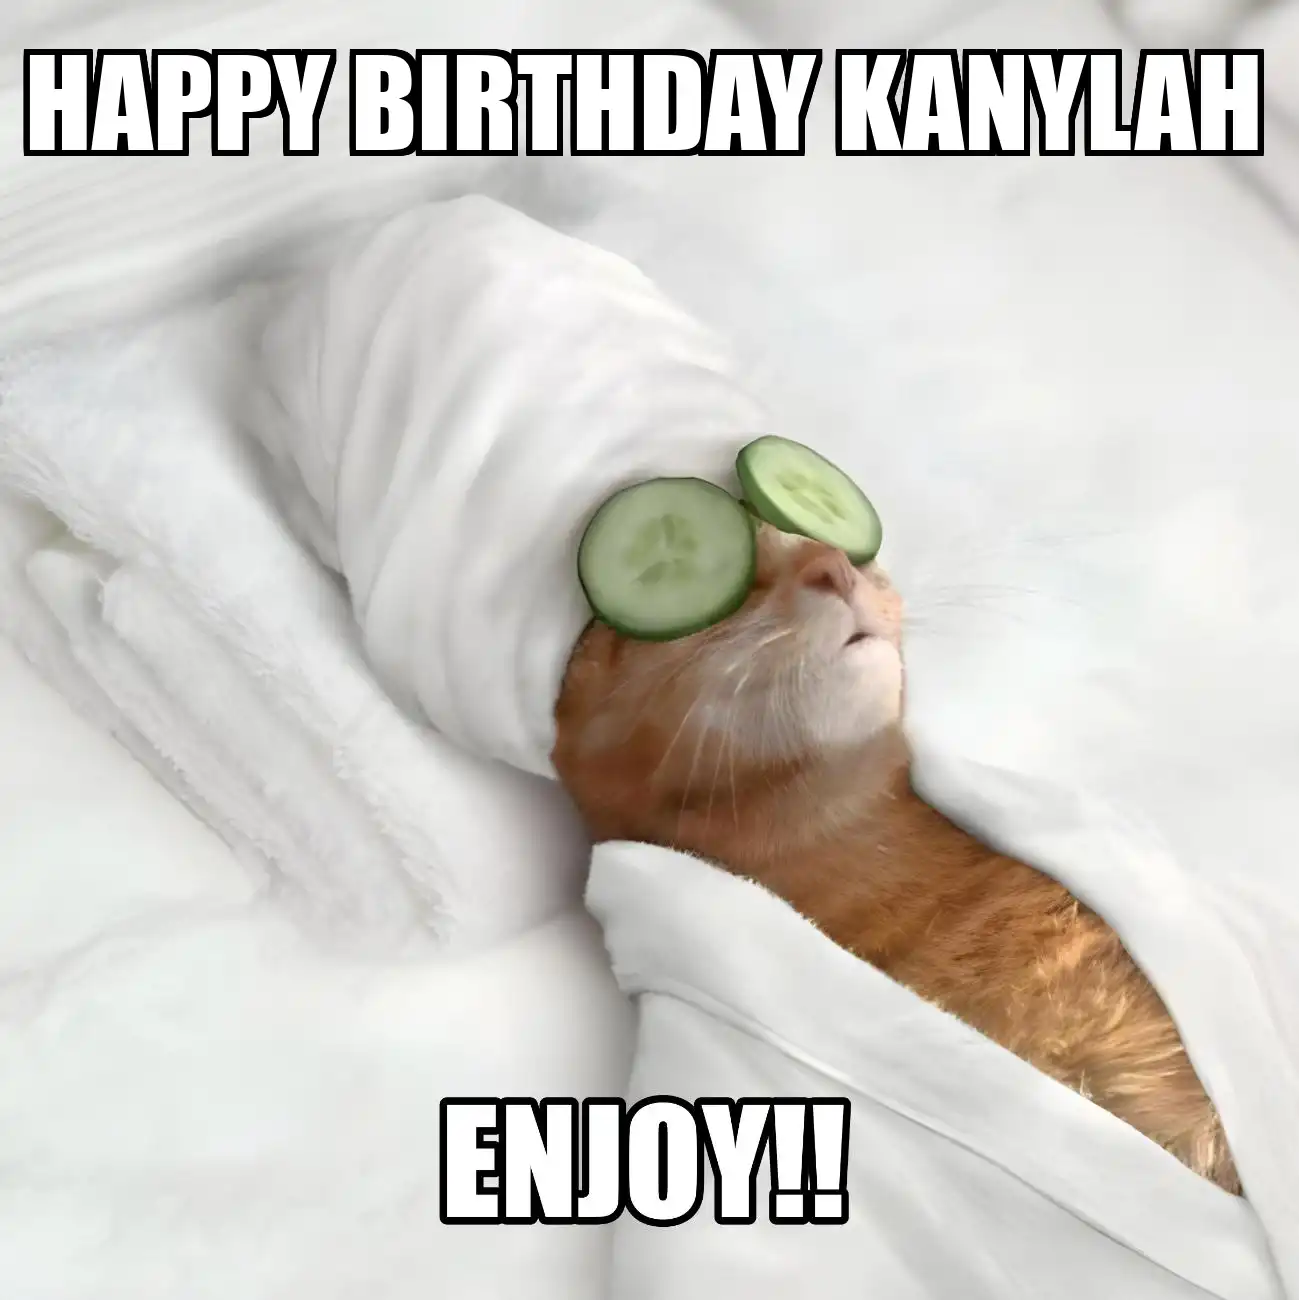 Happy Birthday Kanylah Enjoy Cat Meme